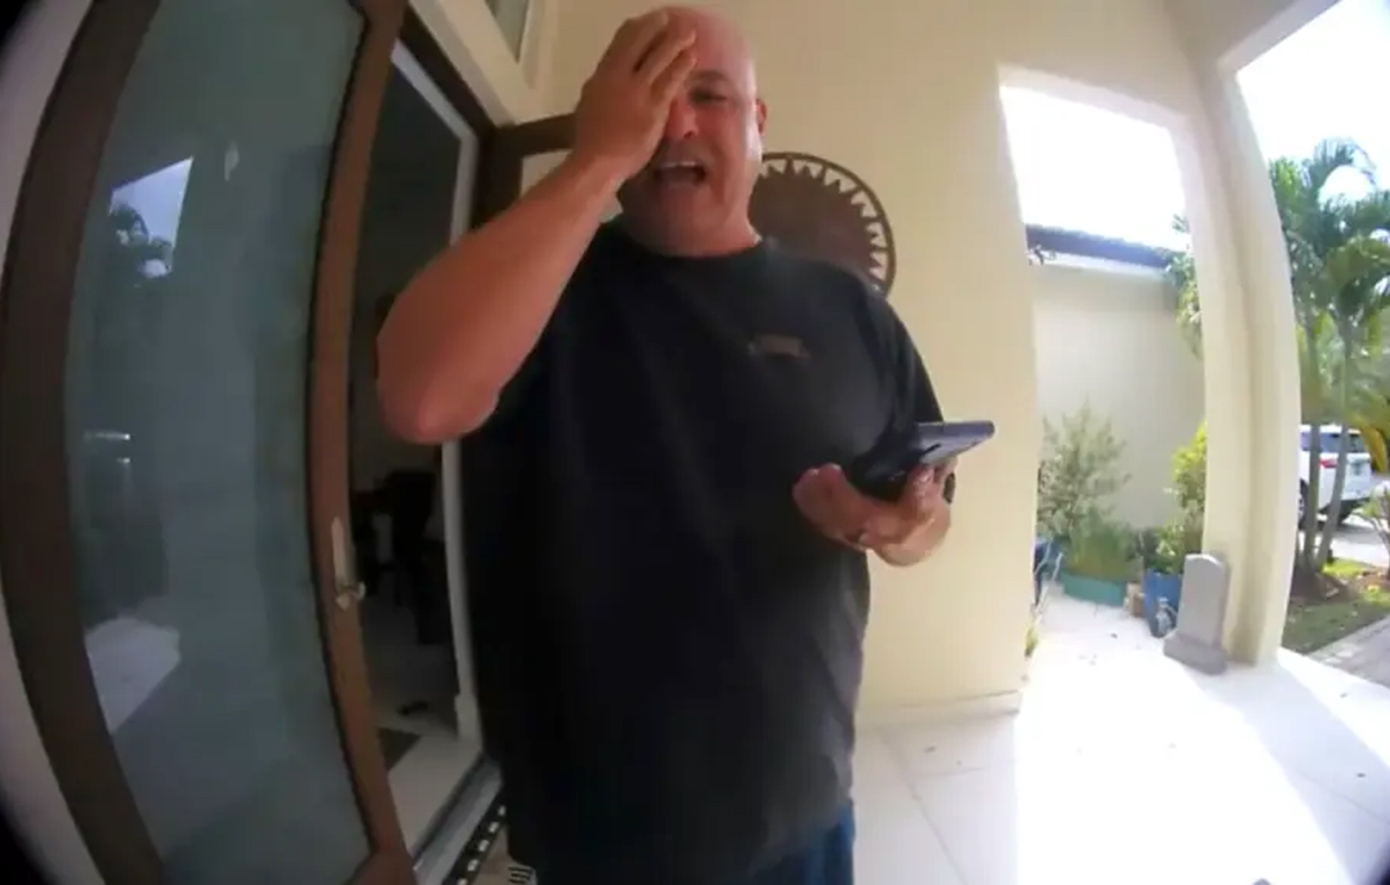 Συγκλονιστικό βίντεο από θυροτηλέφωνο δείχνει πατέρα να ομολογεί με λυγμούς στη γυναίκα του ότι σκότωσε τον γιο τους